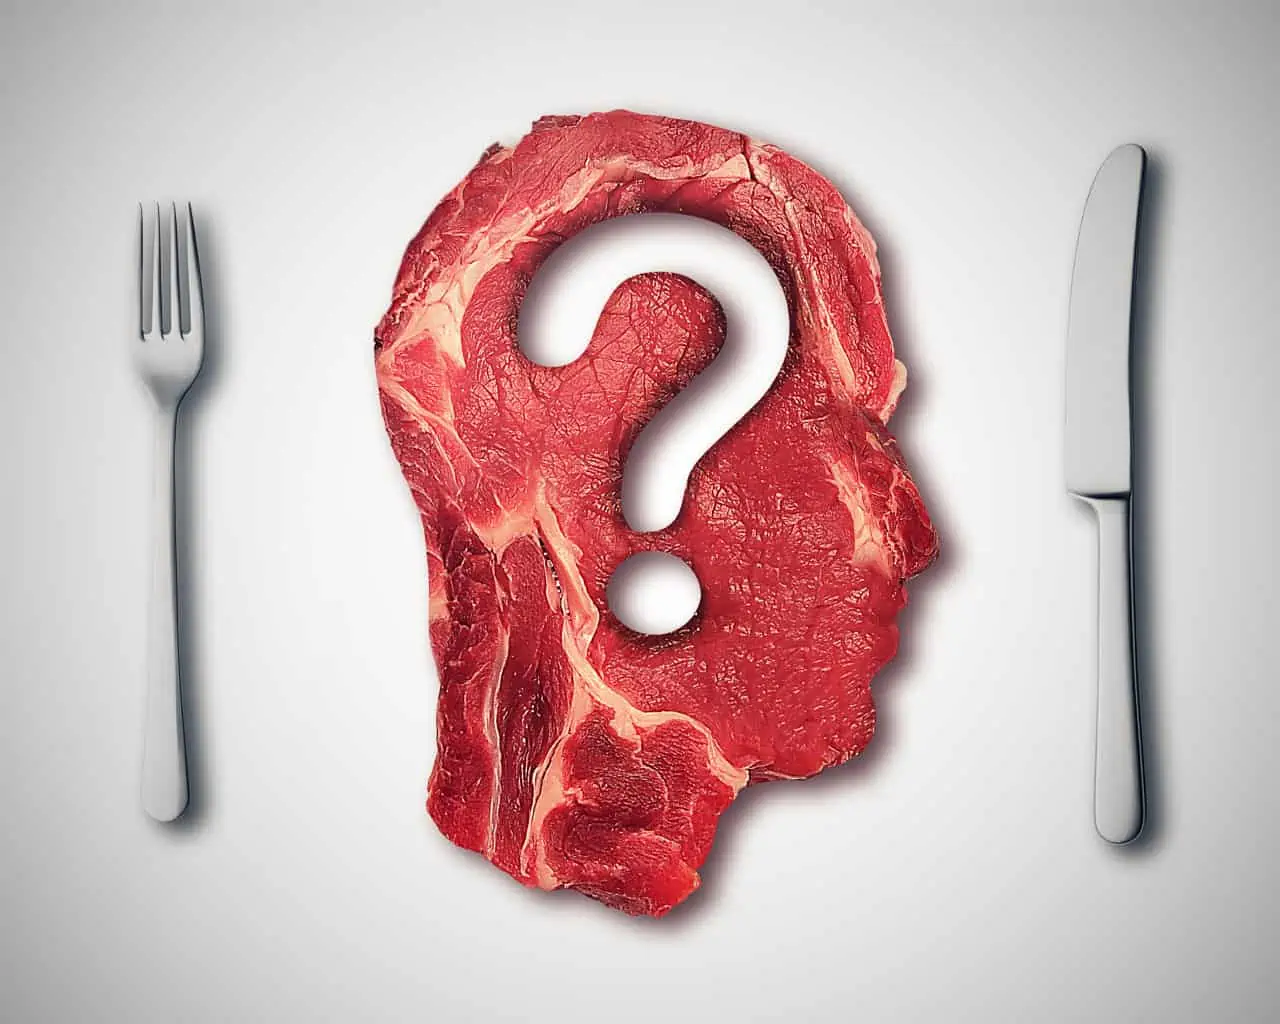 Vari studi avvalorano la tesi che bisognerebbe limitare tanto il consumo di carne